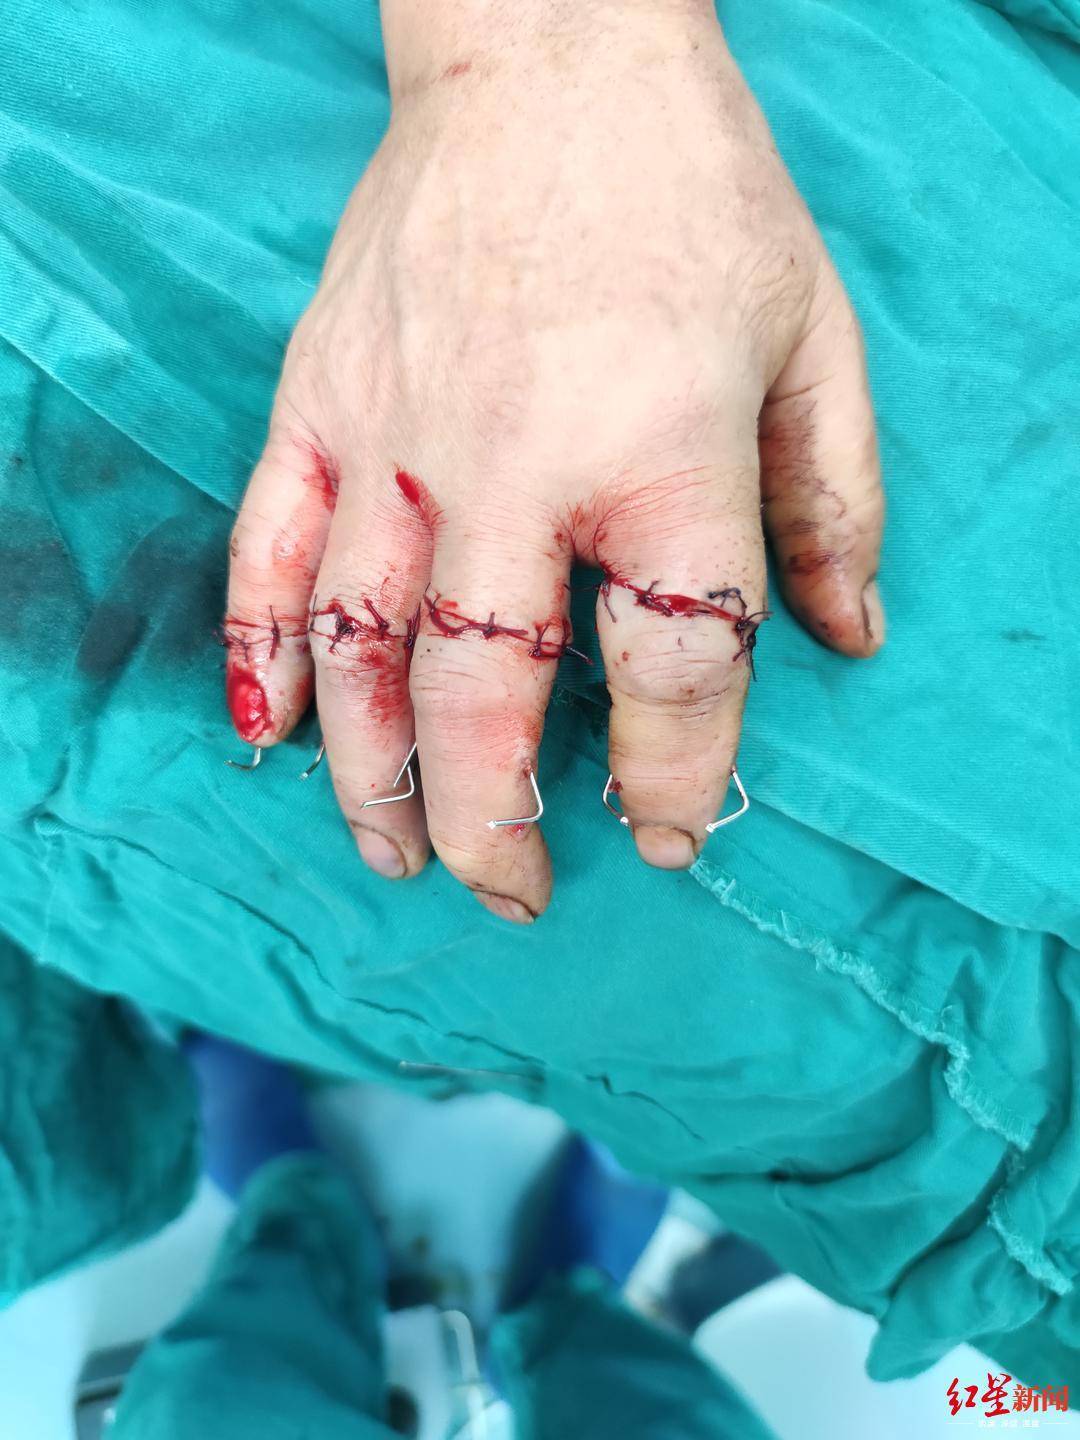 4指被切断医生用0 1毫米线缝合血管历时10小时完成断指再植 手指